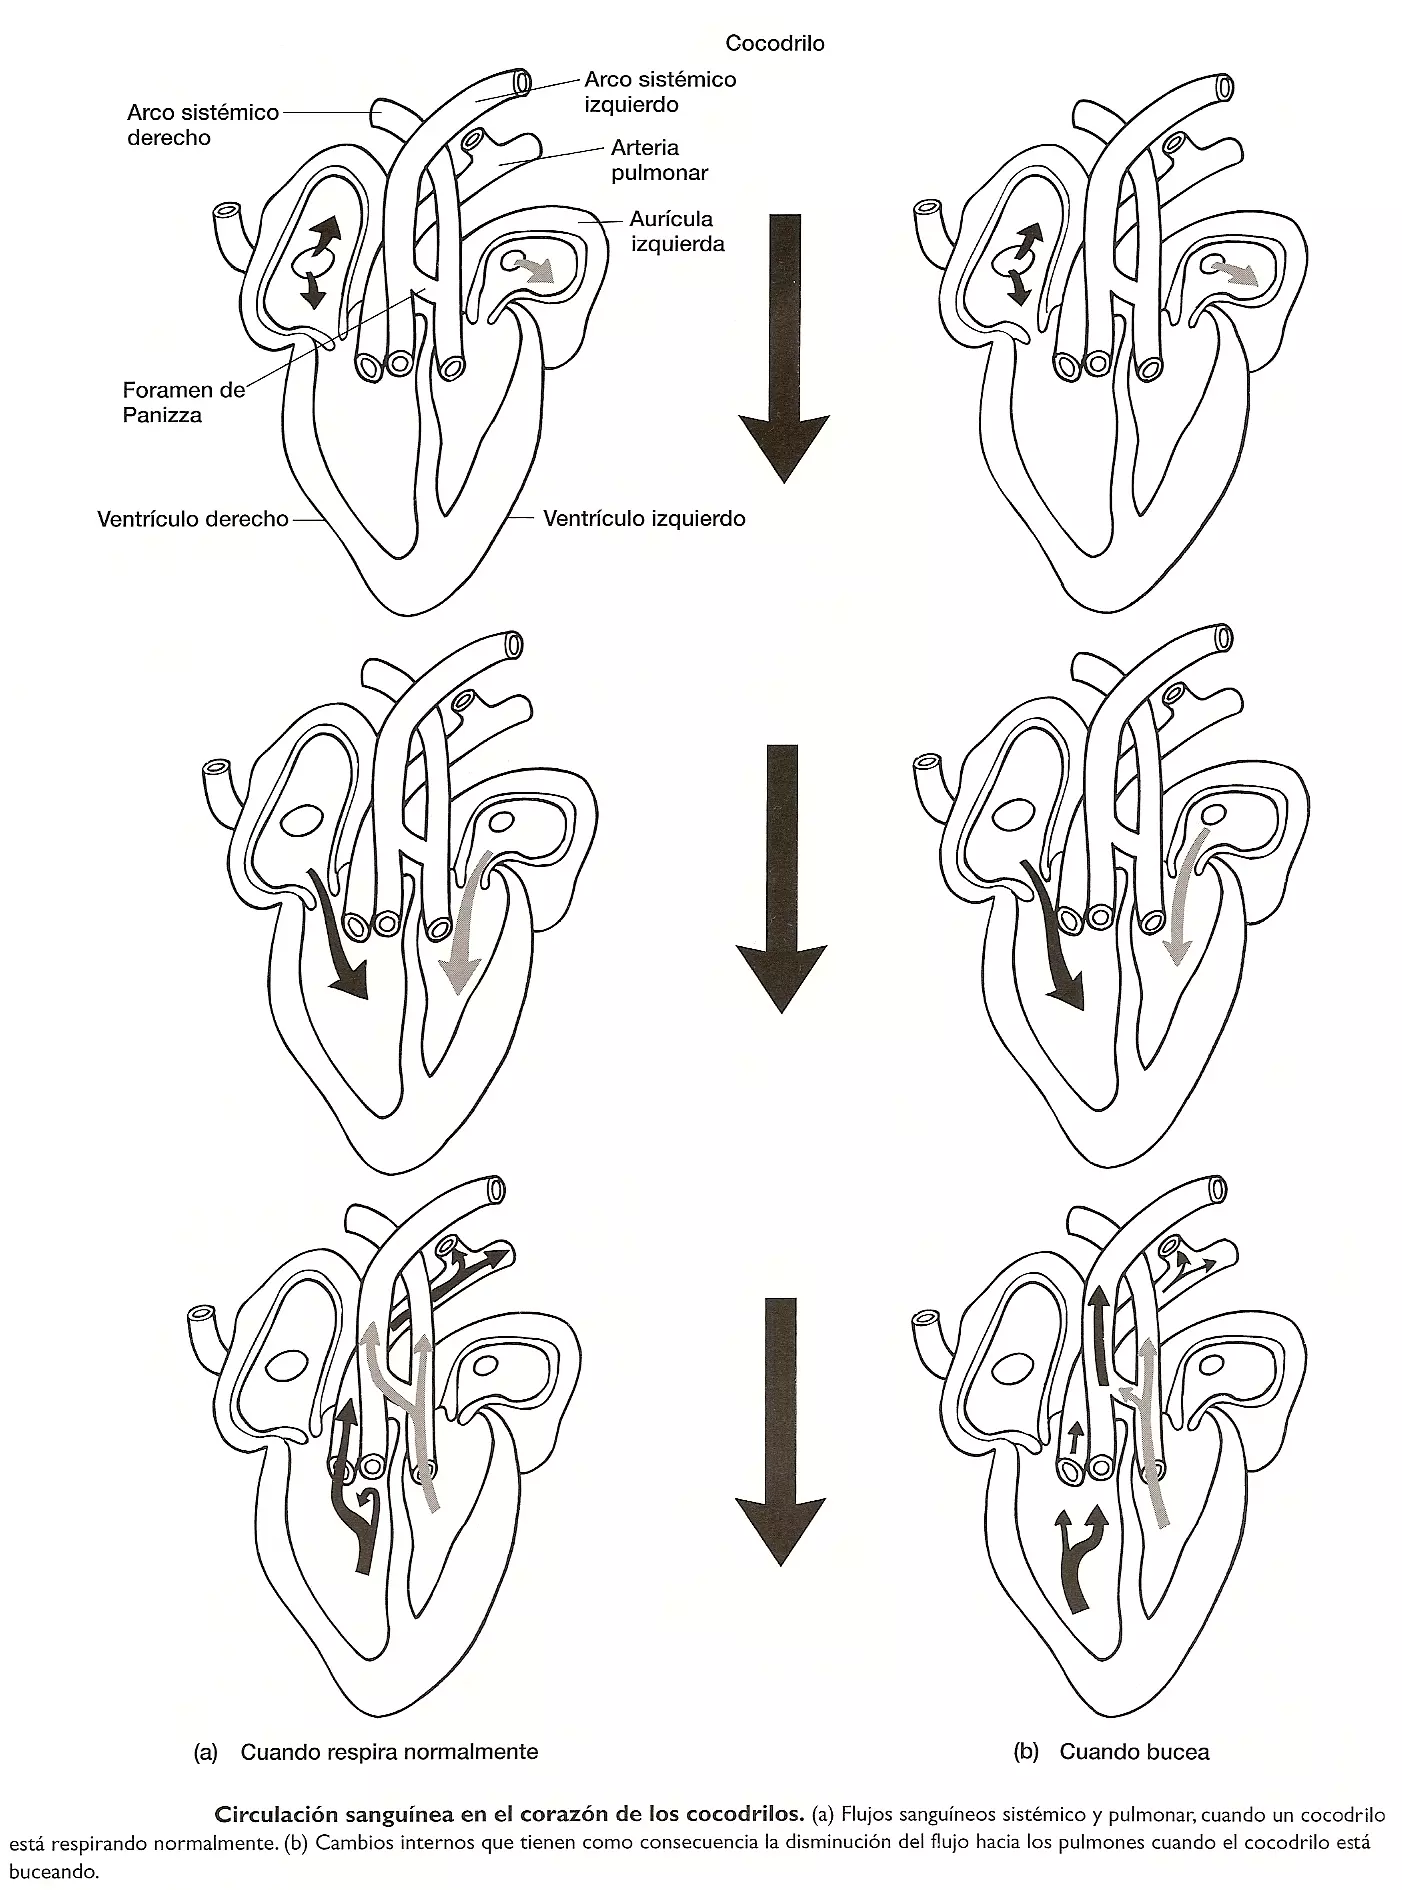 Corazón de los cocodrilos - Sistema cardiovascular de los cocodrilos - Flujo sanguíneo en los cocodrilos